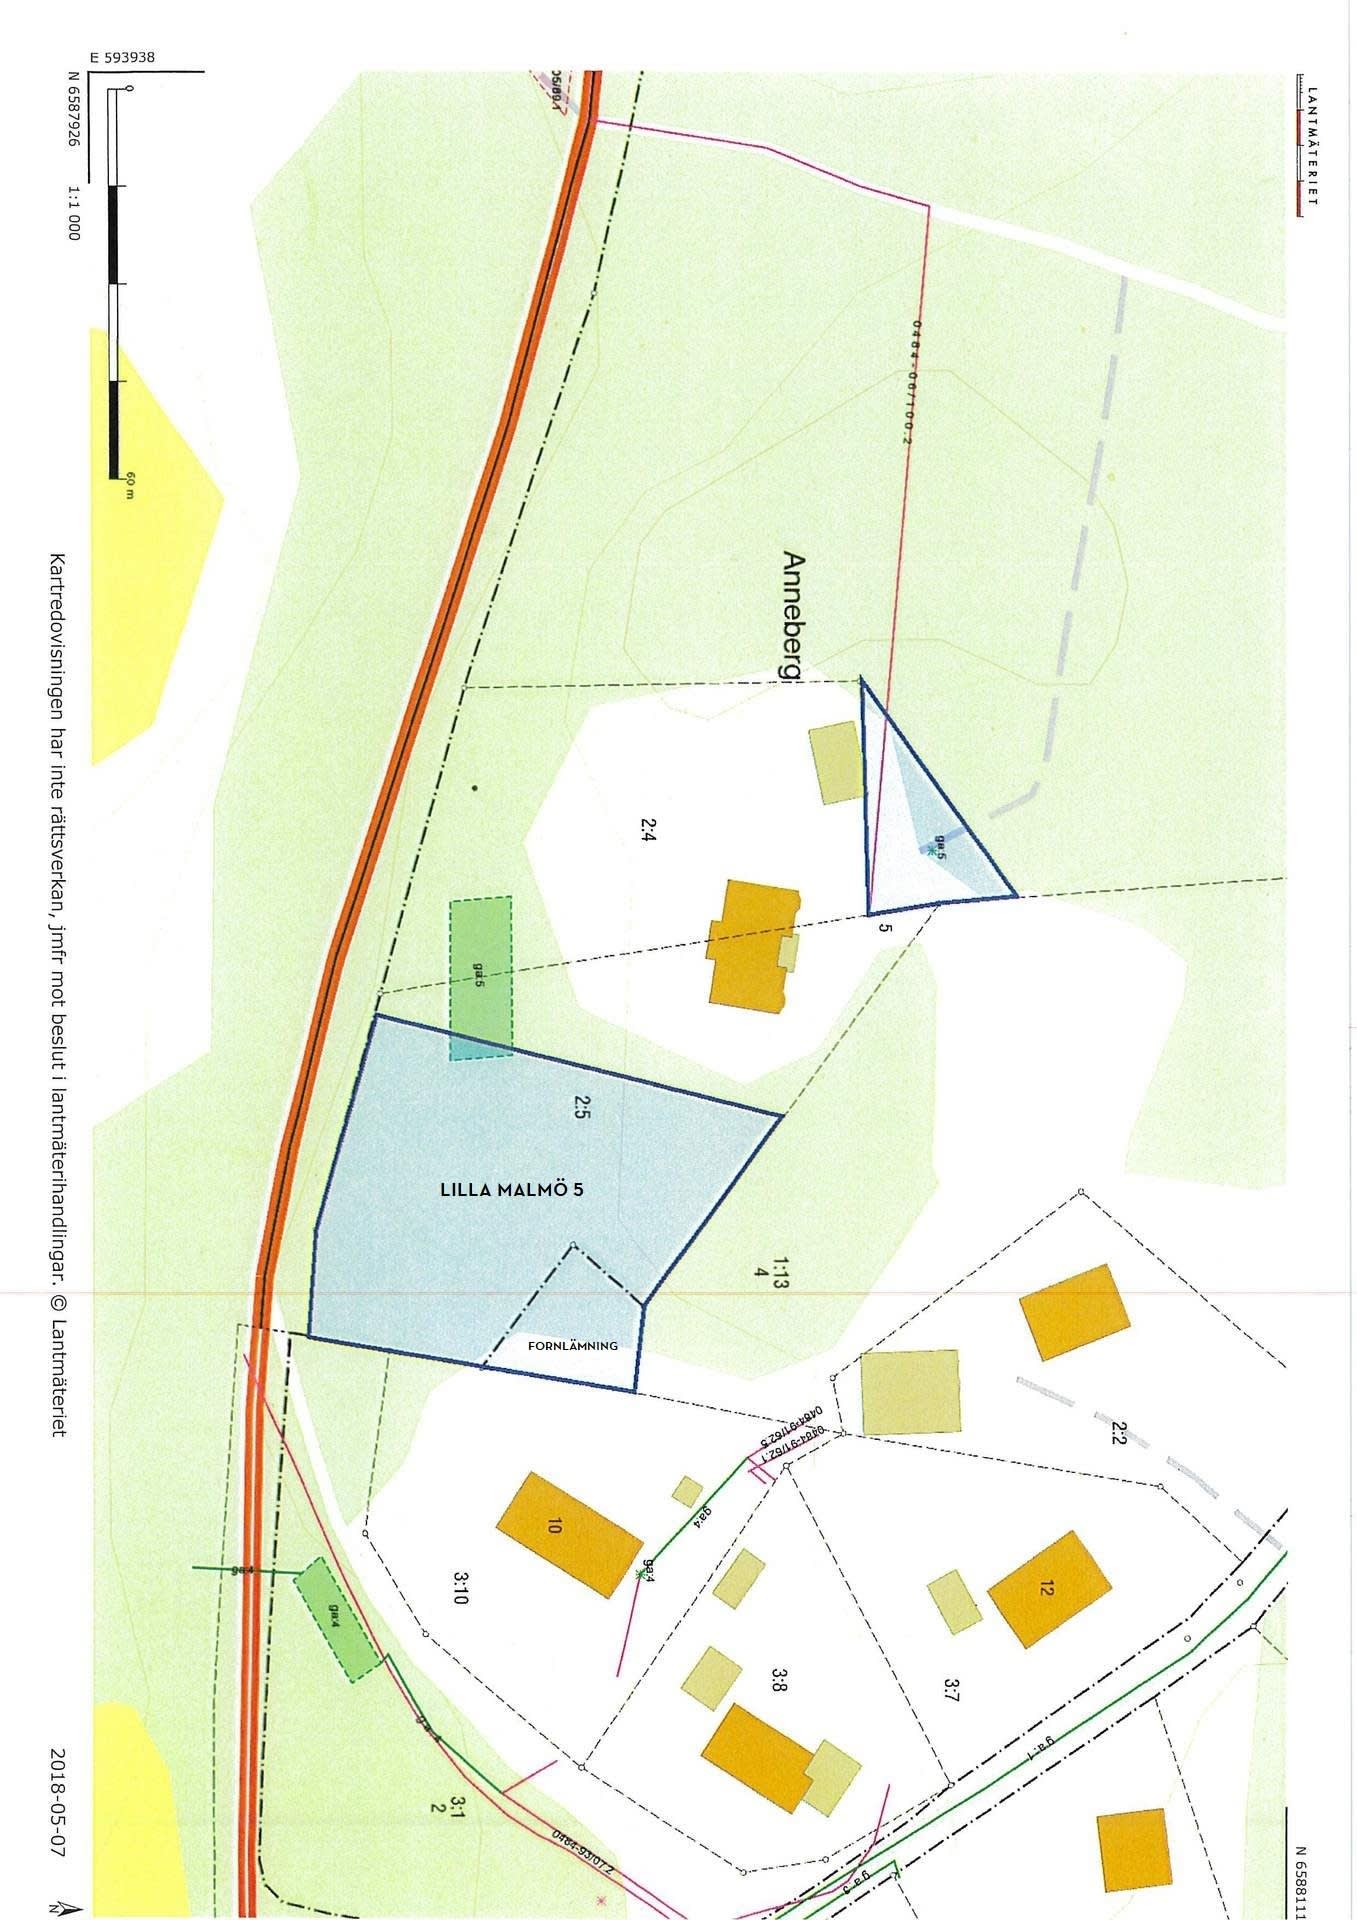 Fastighetskarta med förslag på ny fastighetsgräns på Lilla Malmö 2:5,
2 289 kvm, ny plankarta kommer att presenteras när beslutet vunnit laga kraft.